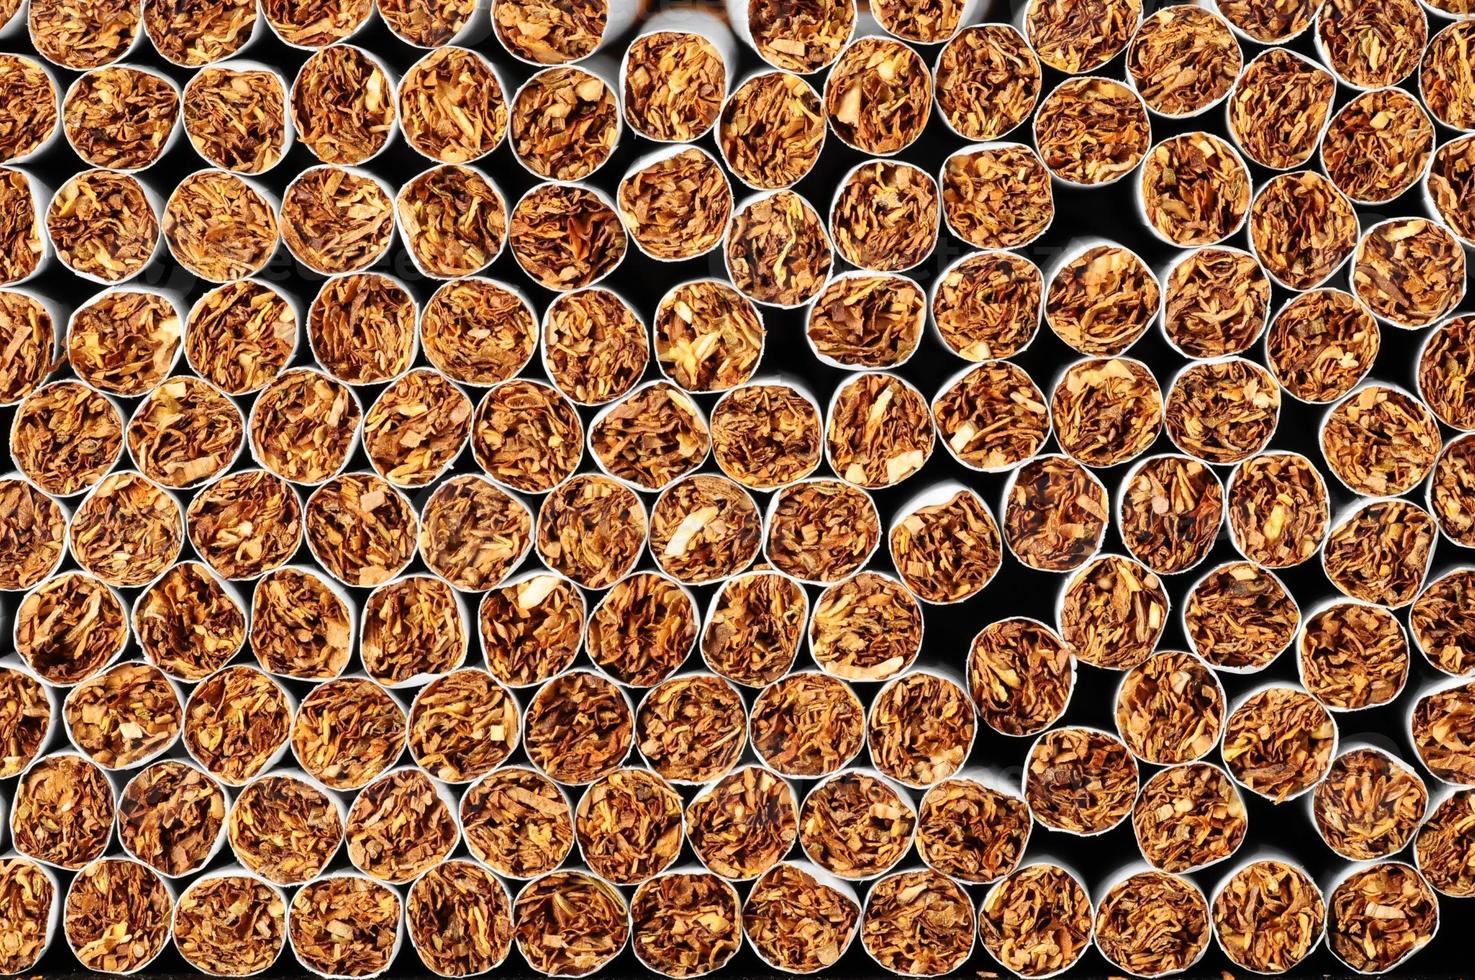 industrie du tabac avec des cigarettes empilées photo